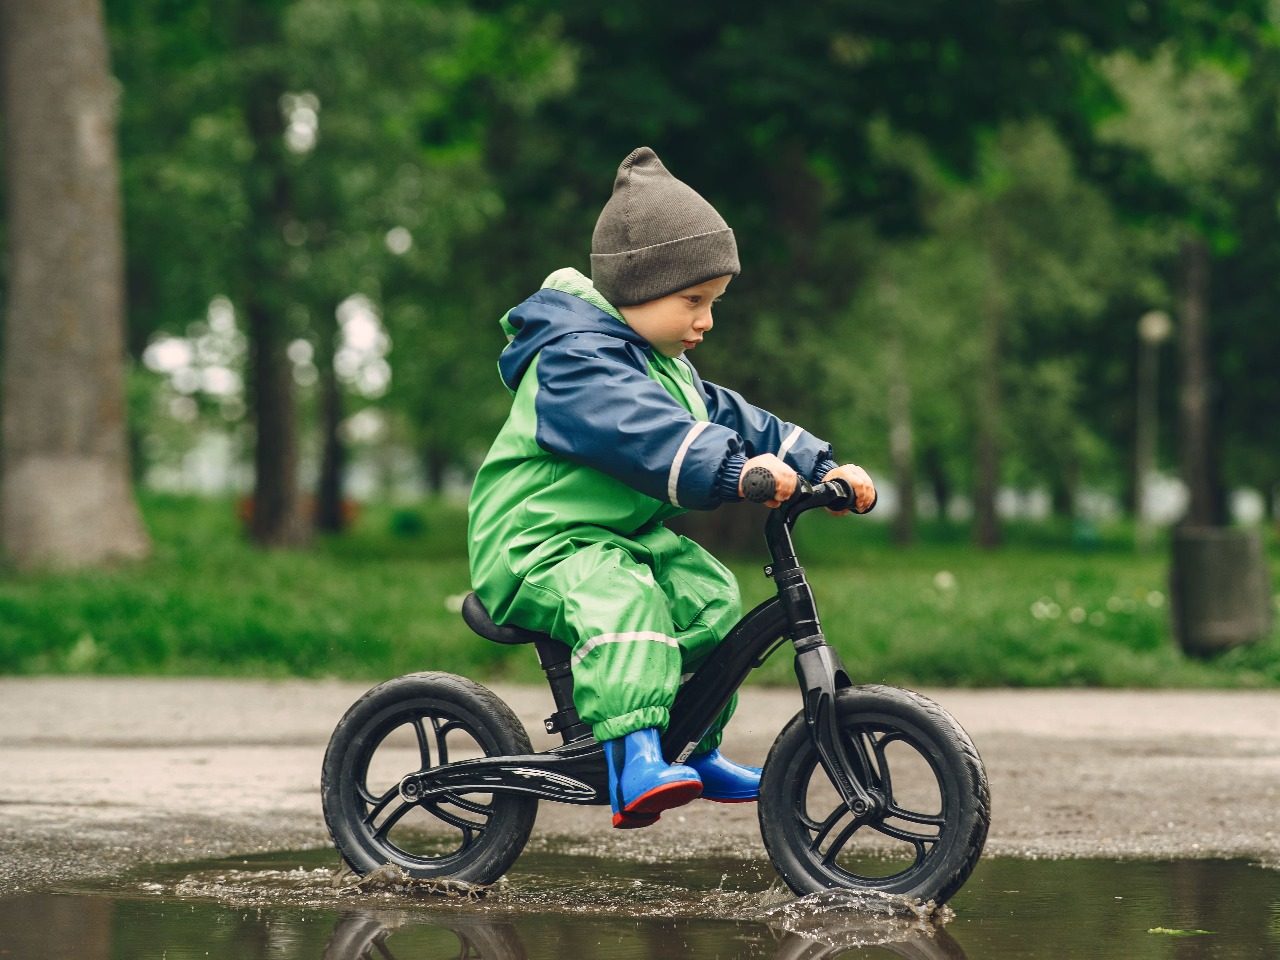 petit garçon sur son vélo au milieu d'une flaque d'eau, image de prostooleha sur Freepik